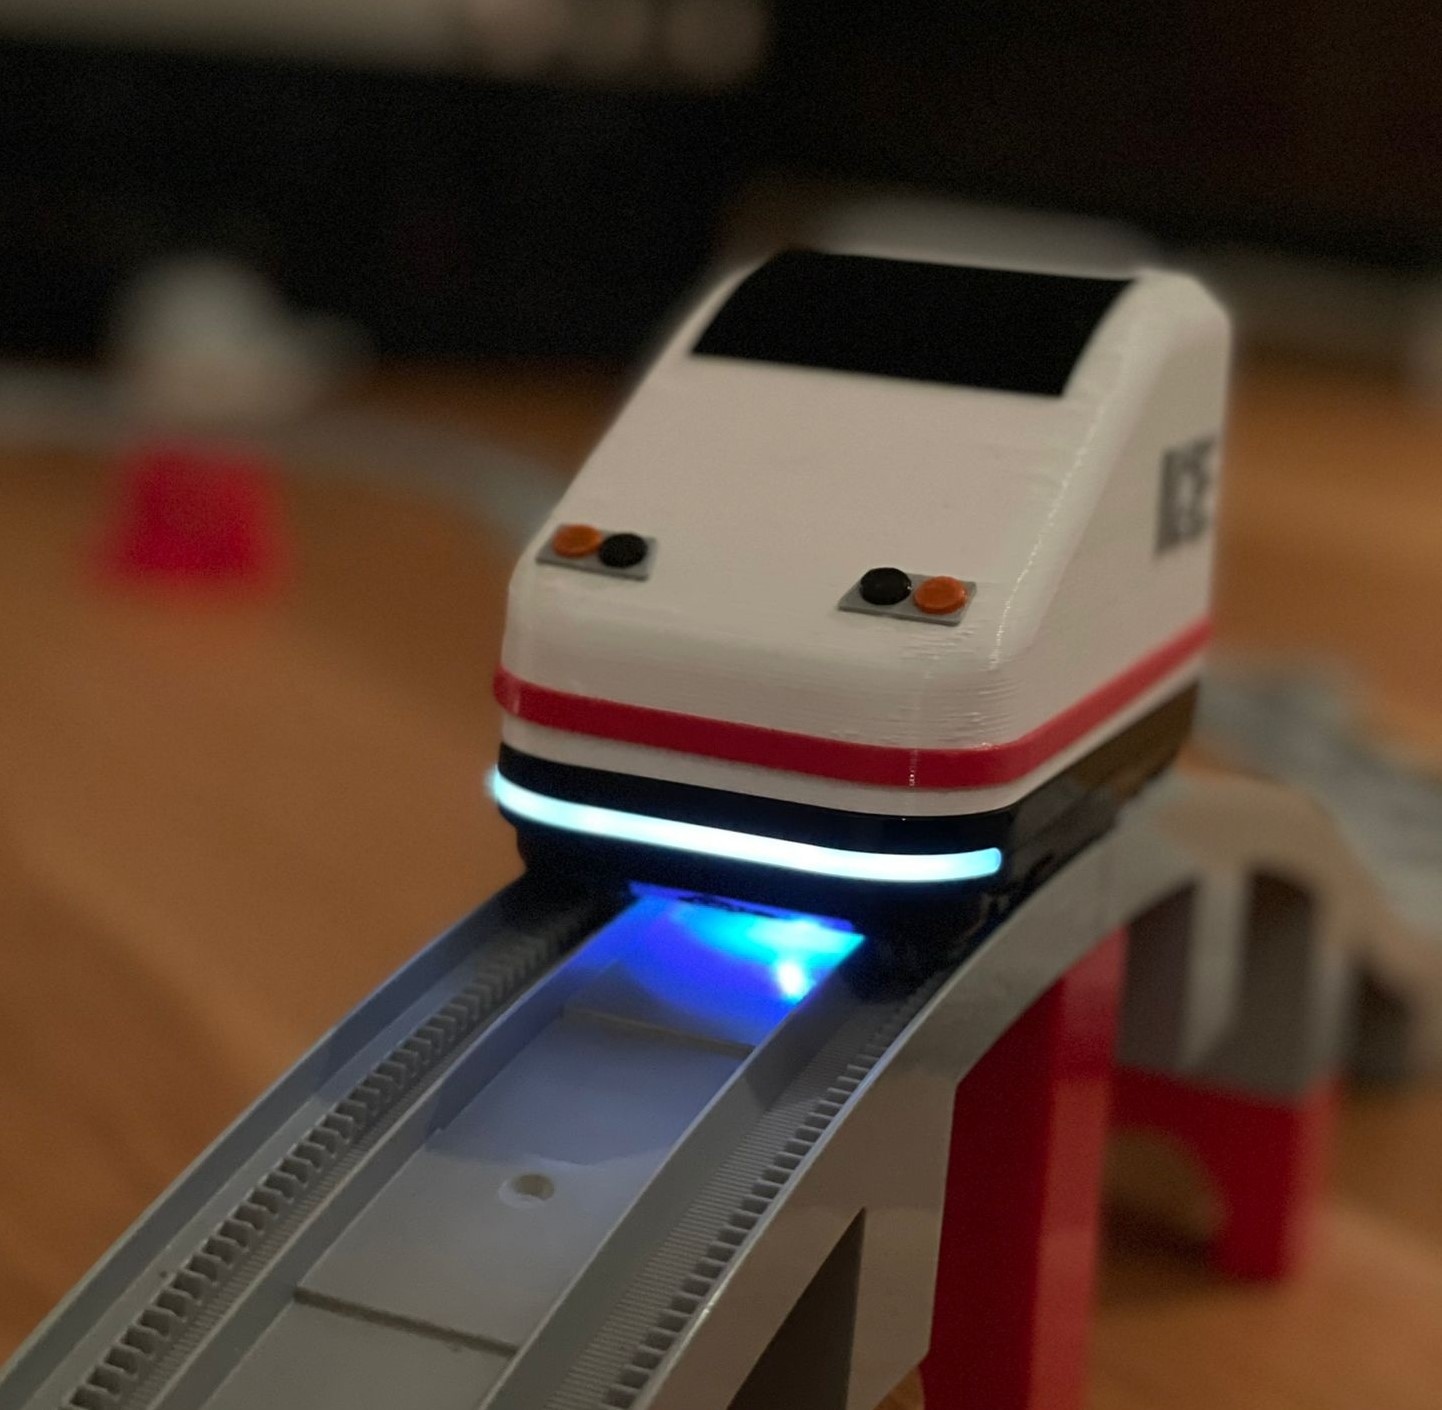 ICE for Lego Duplo train / ICE für Lego Duplo Eisenbahn by Emely